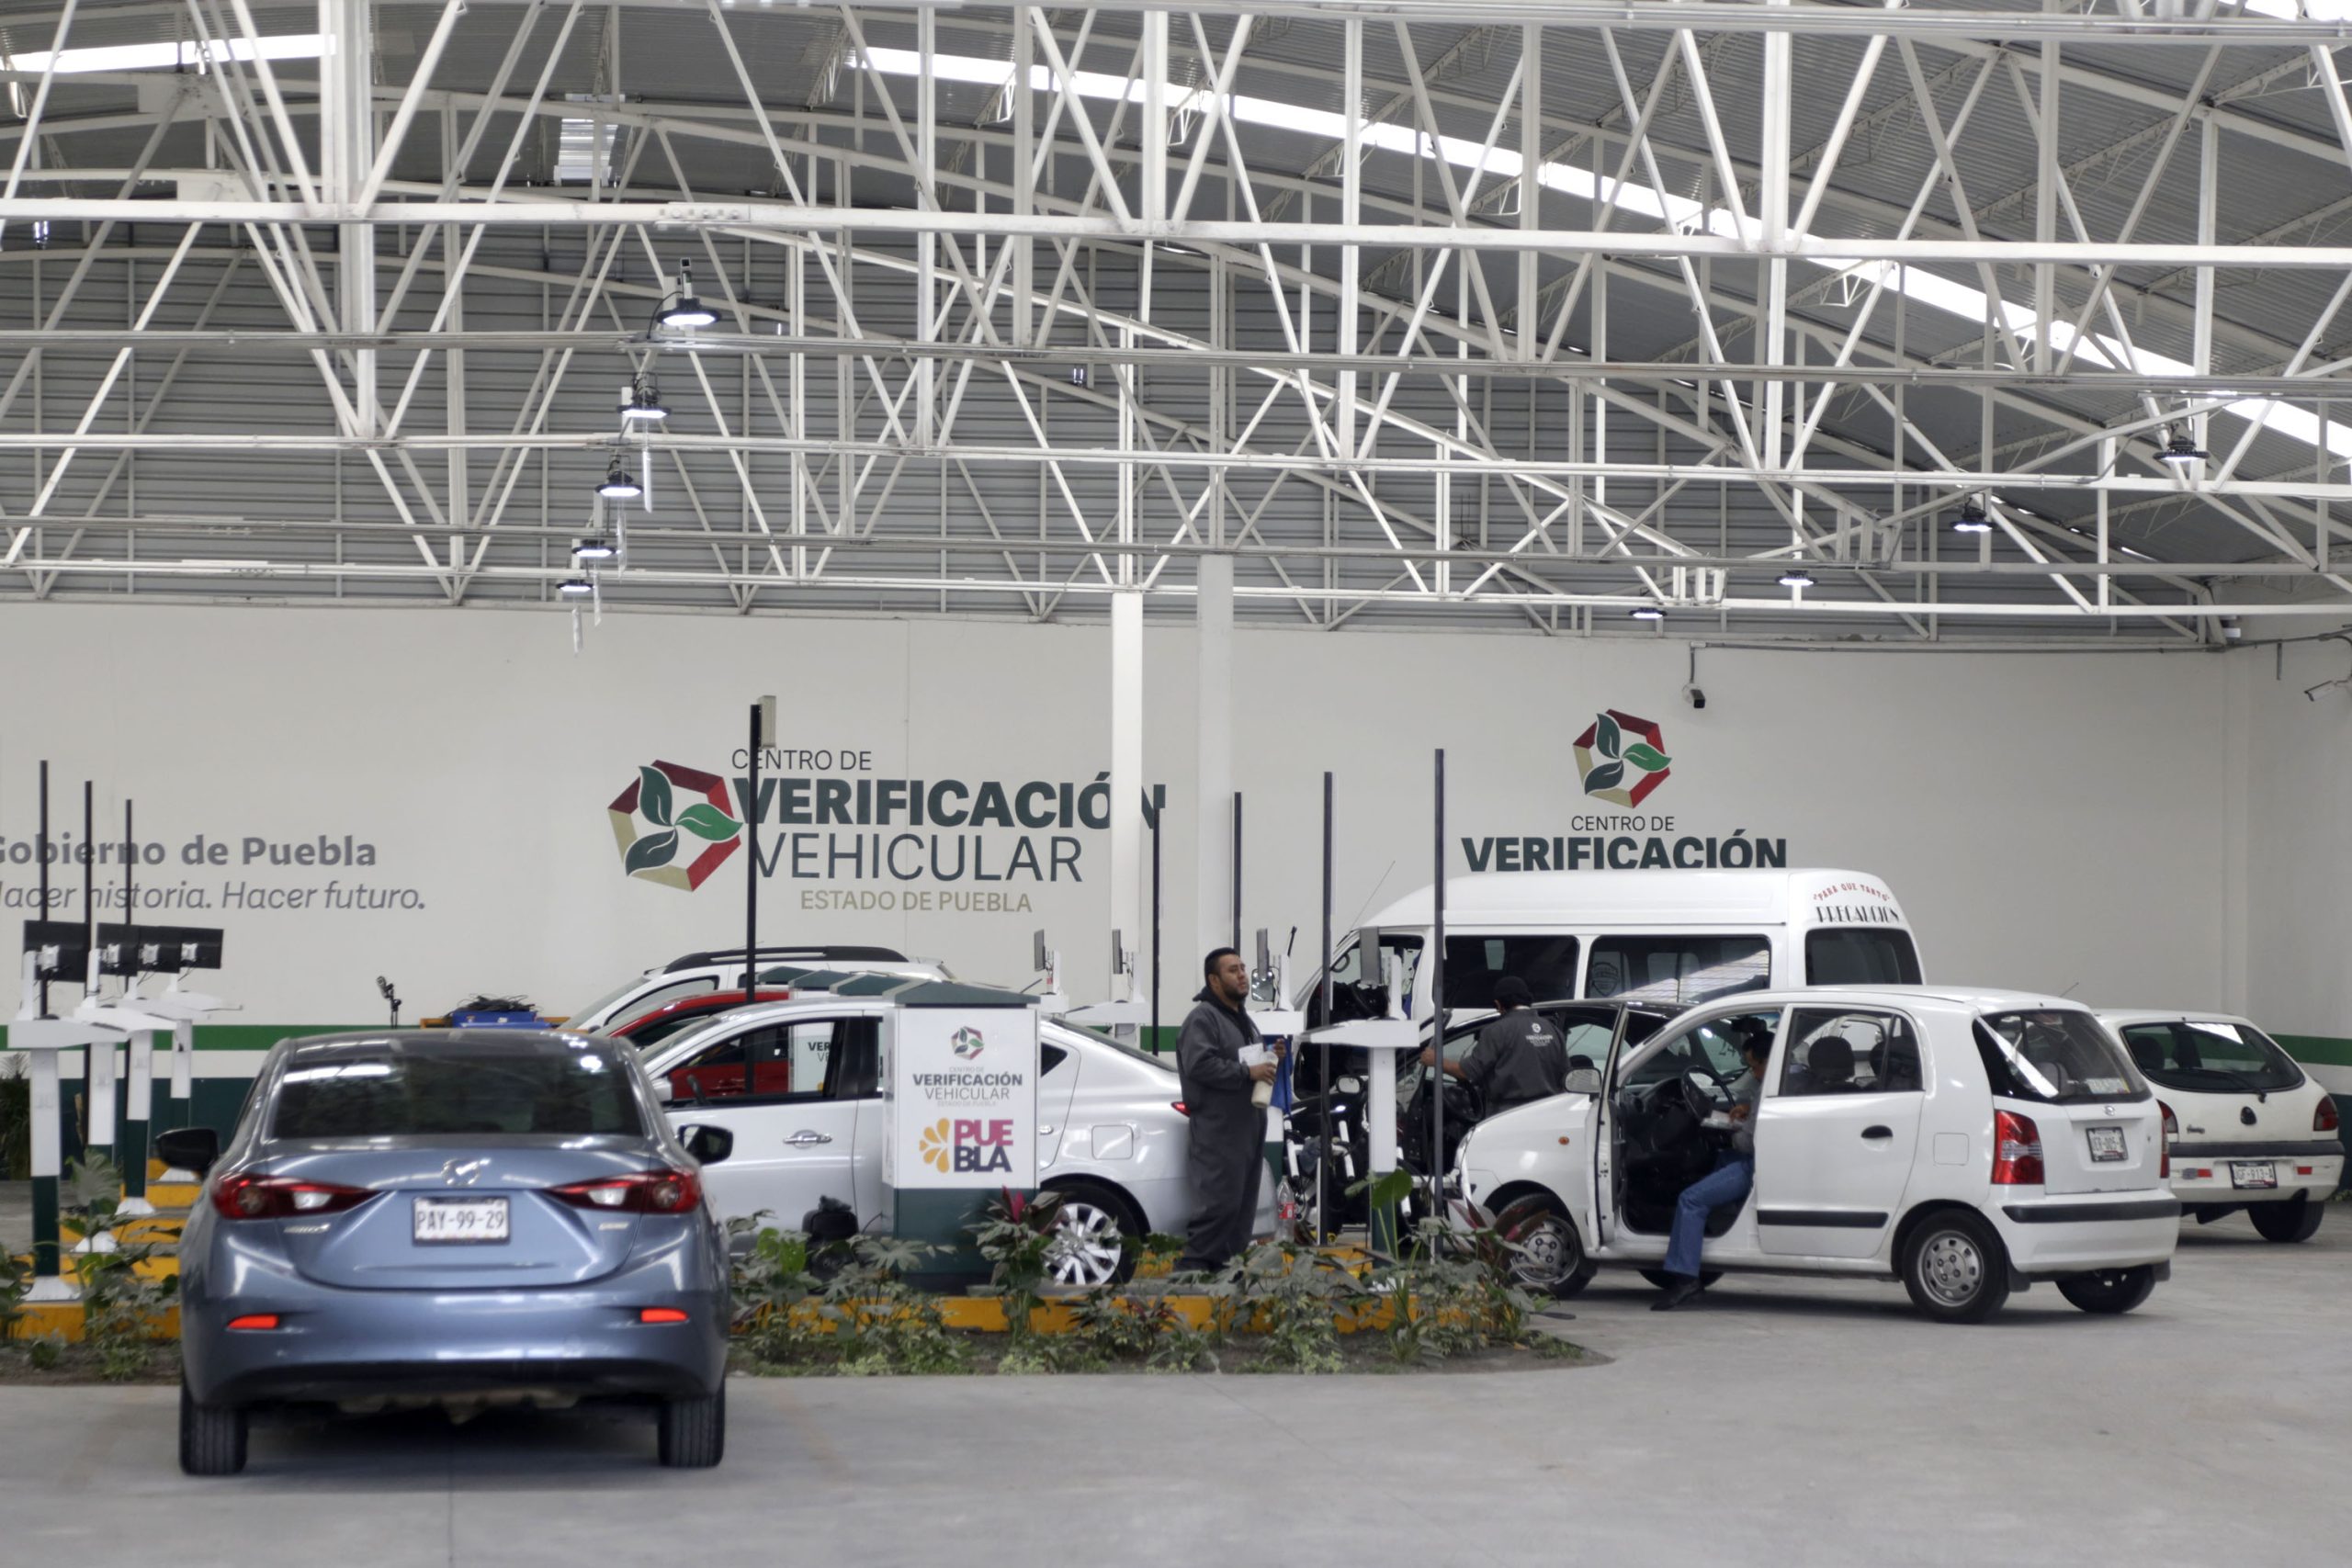 No desaproveches, amplían horario para verificación vehicular en Puebla